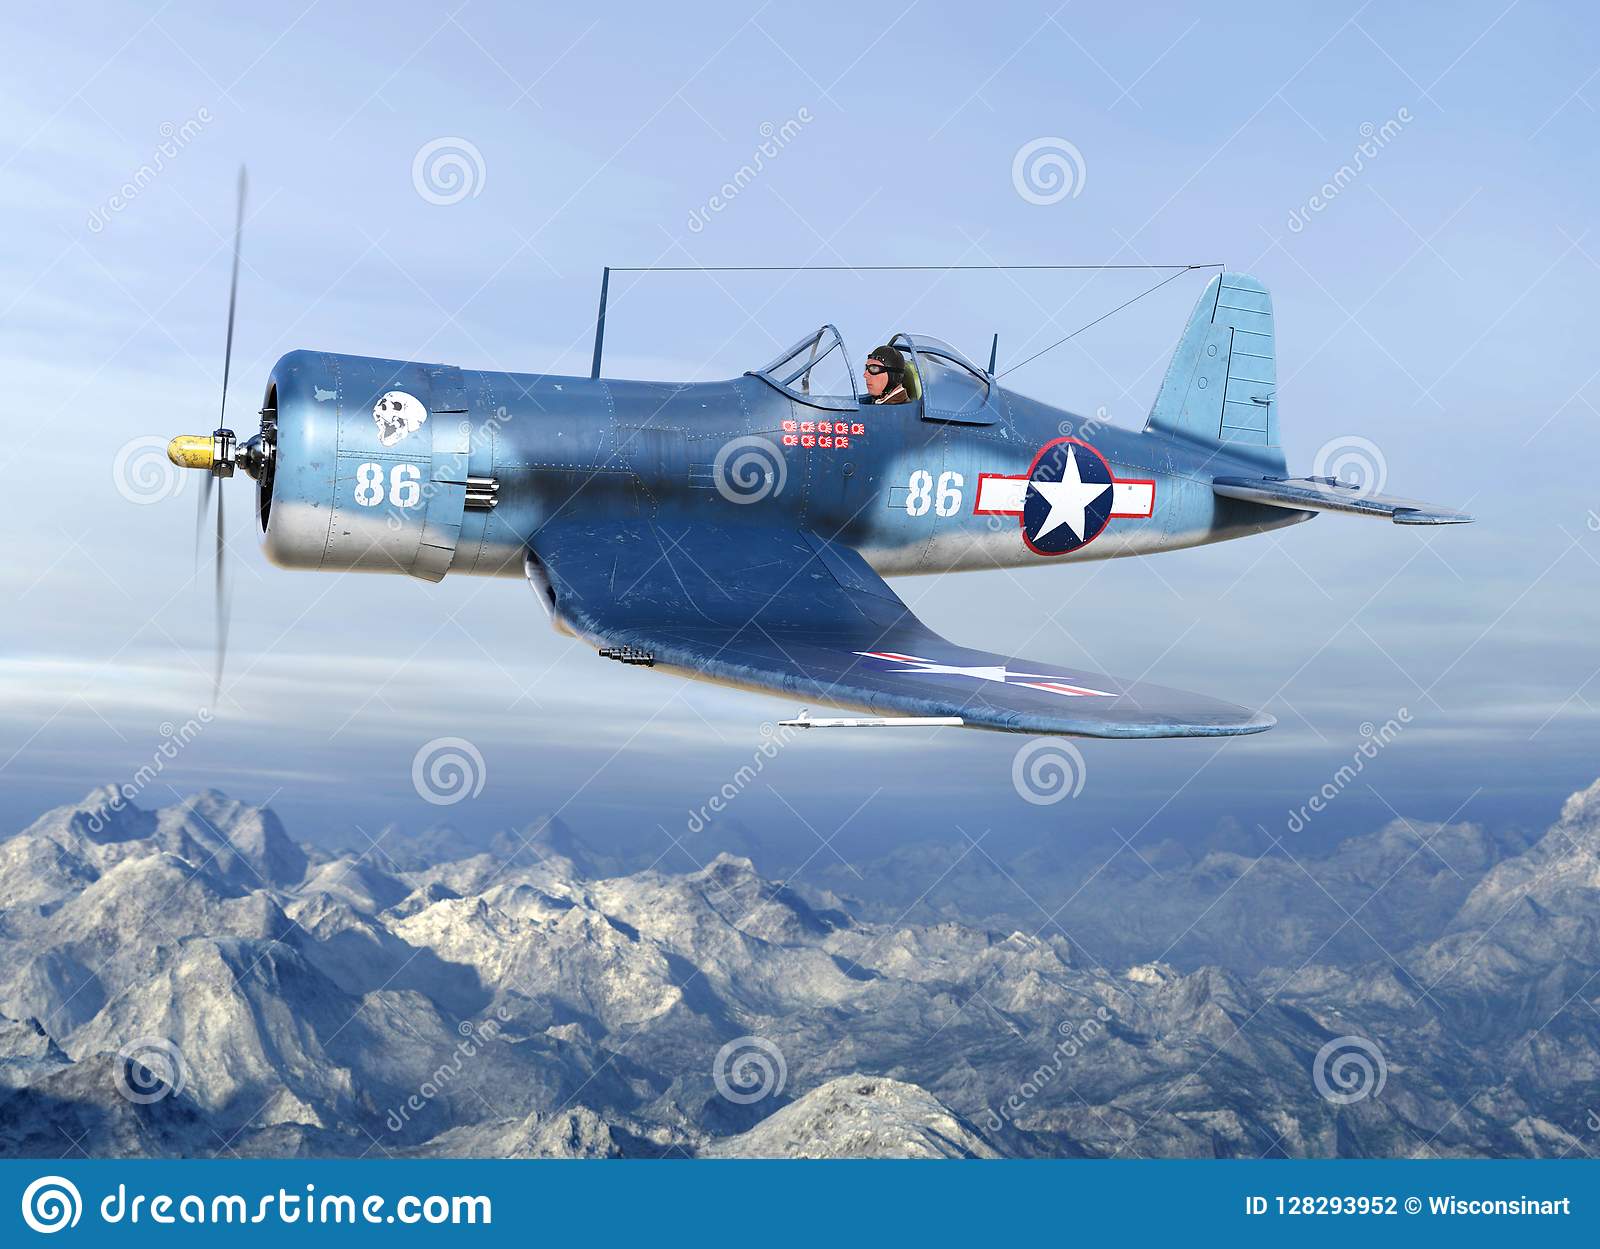 wwii-fighter-plane-warbird-pilot-military-world-war-ii-aviator-flies-his-airplane-air-battle-a...jpg